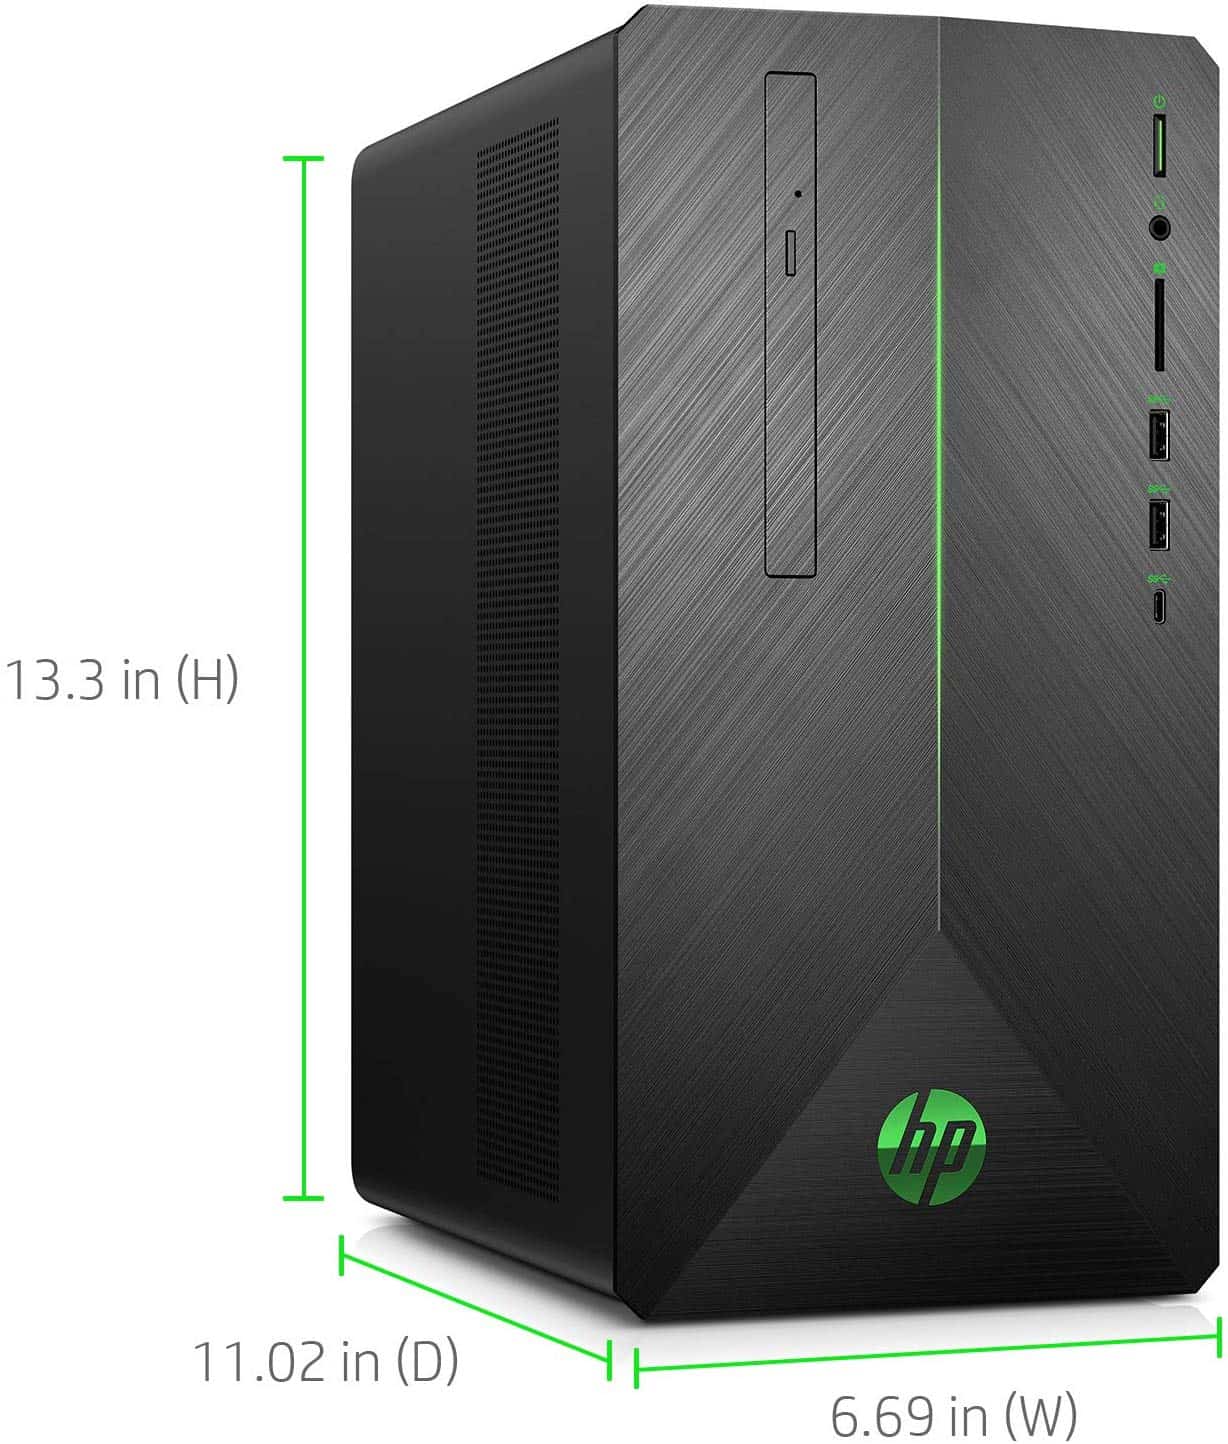 Kích thước máy tính để bàn HP Pavilion Gaming "width =" 357 "height =" 420